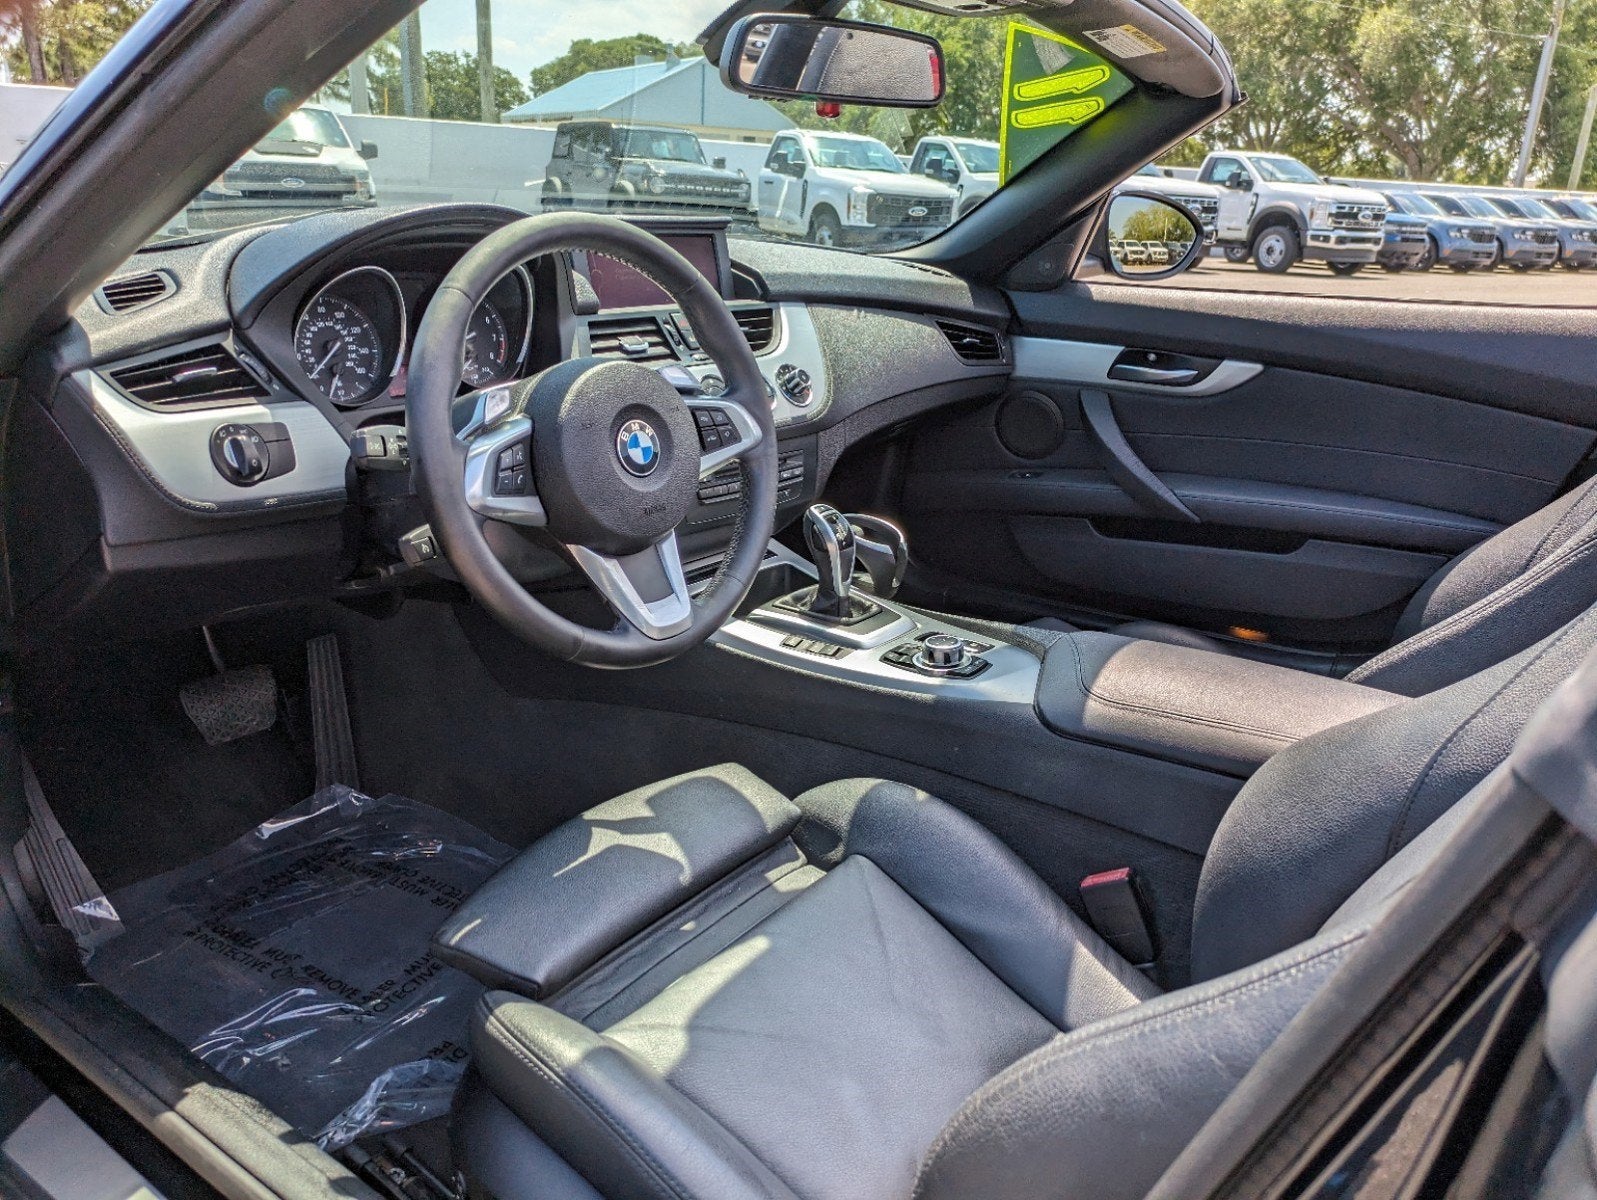 2011 BMW Z4 sDrive35i